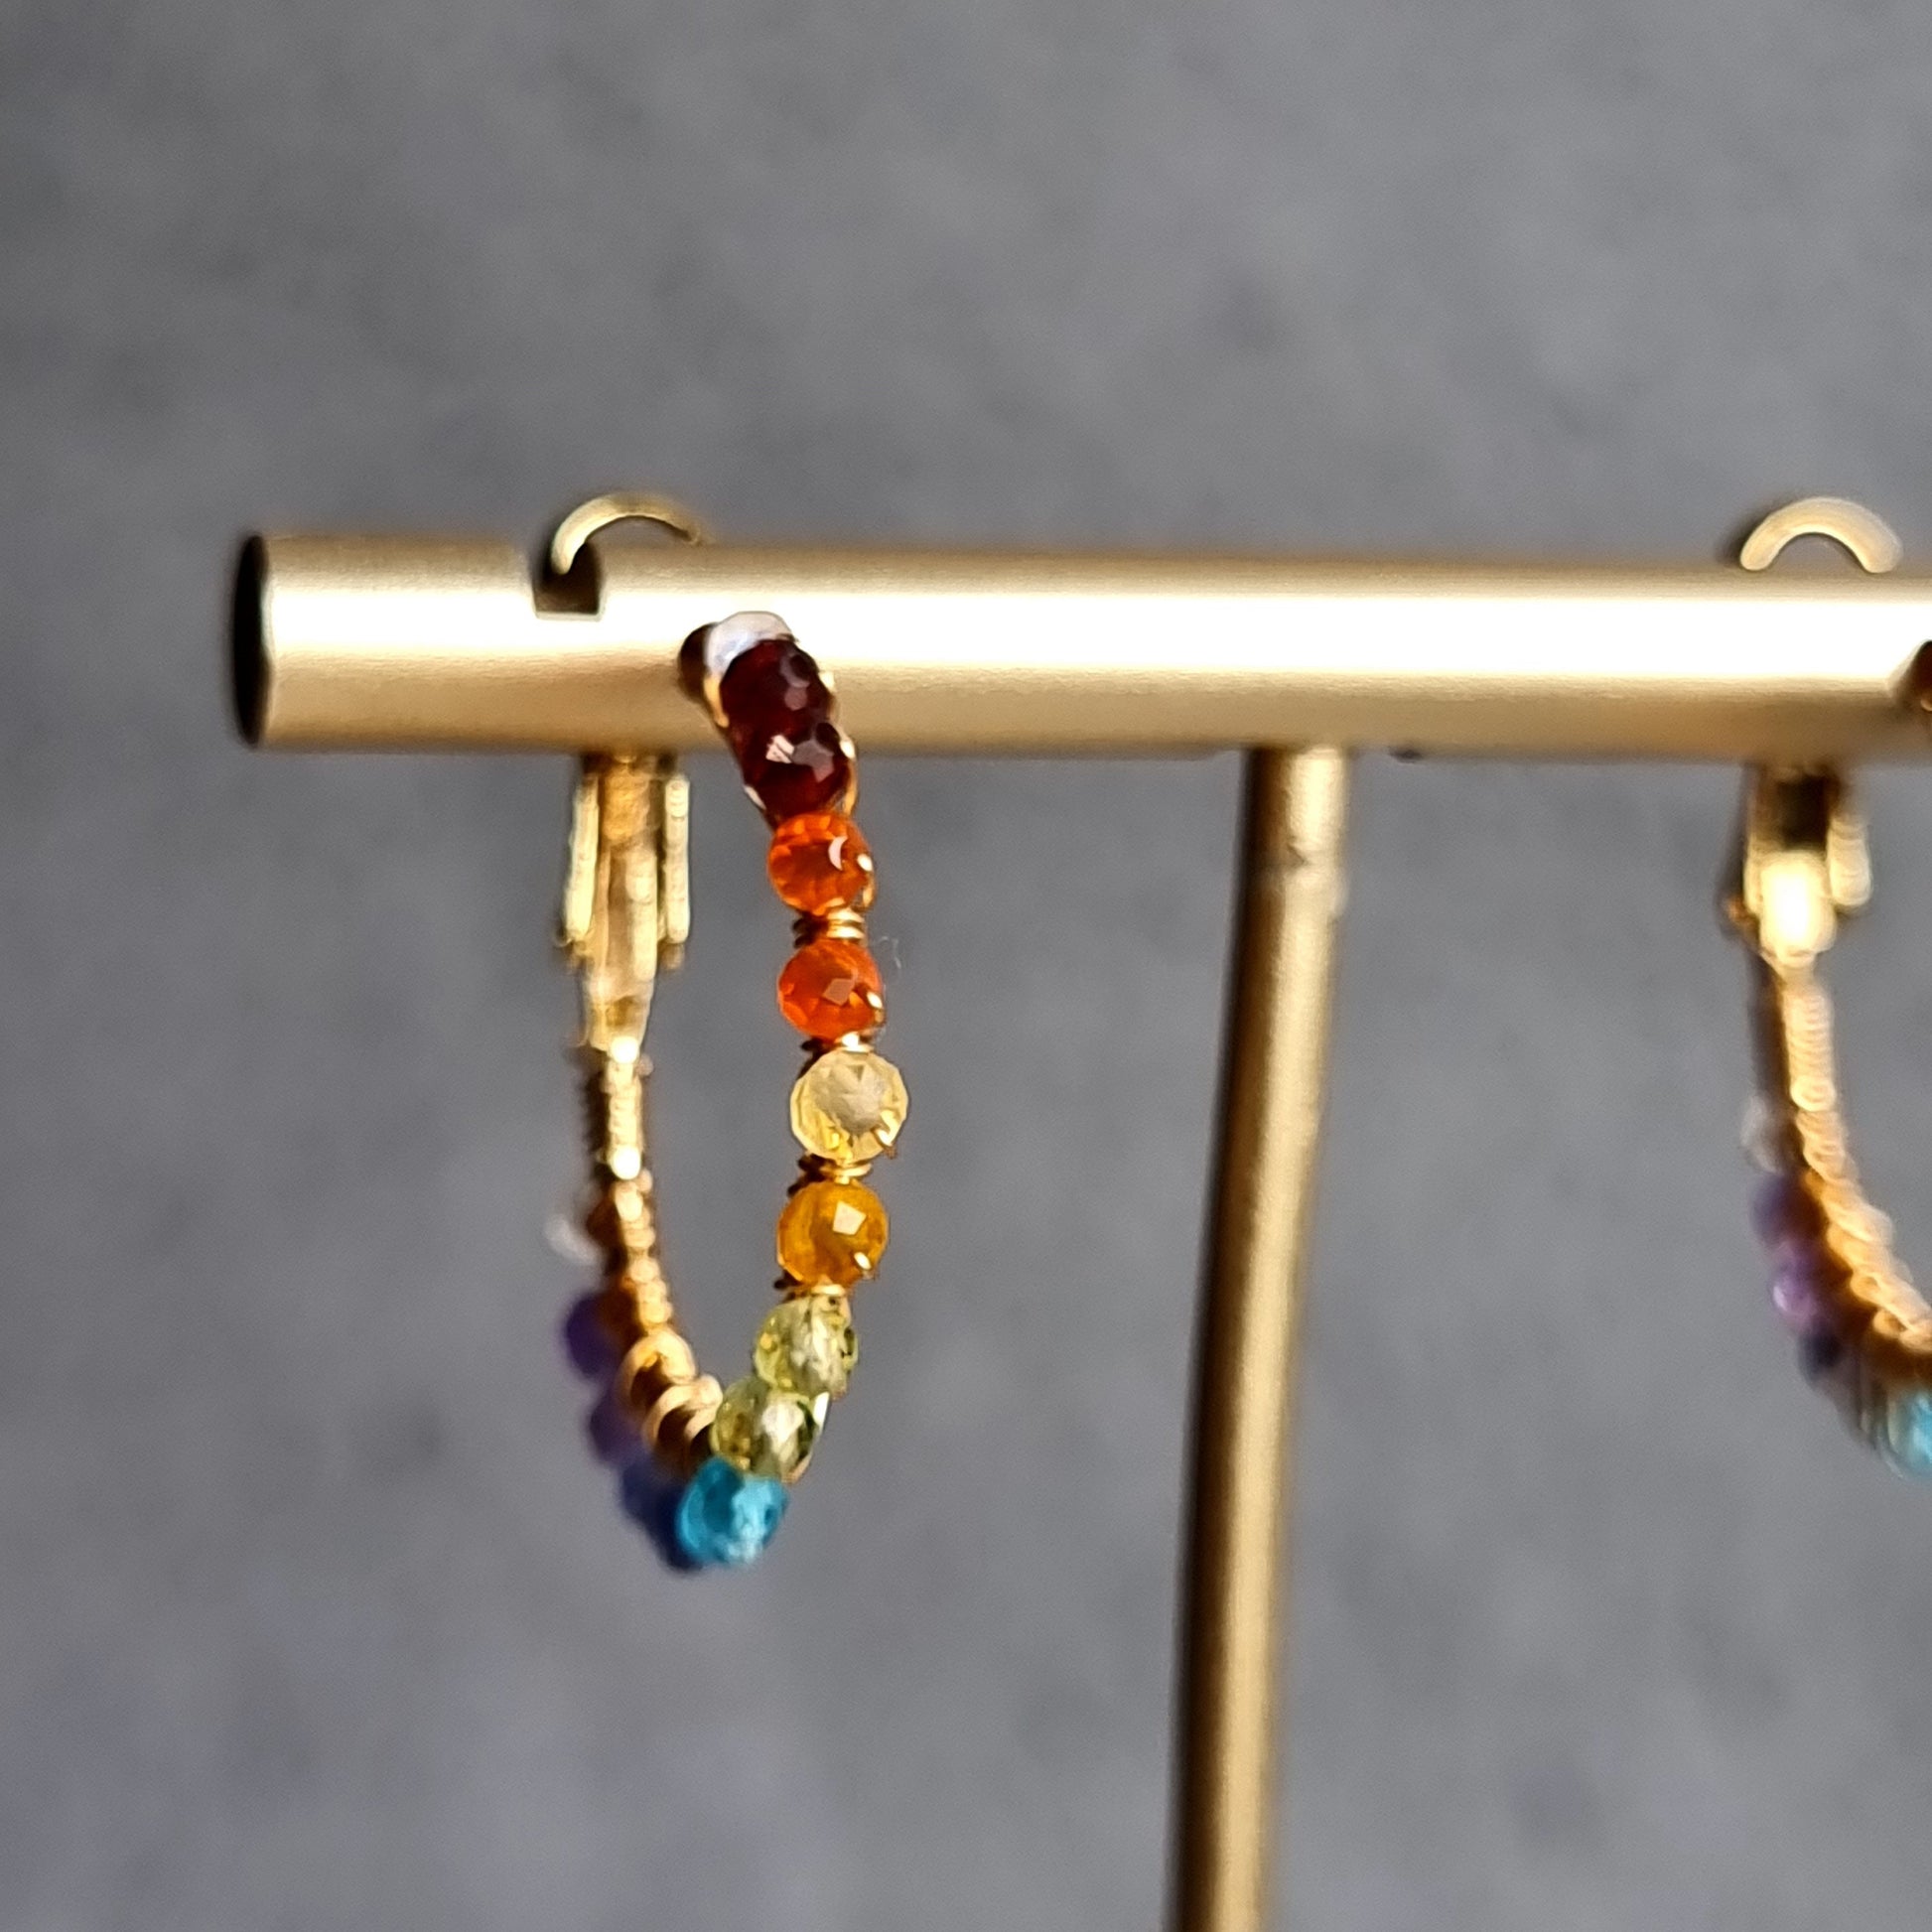 Small Hoop Rainbow Gemstone Earrings - 18 mm